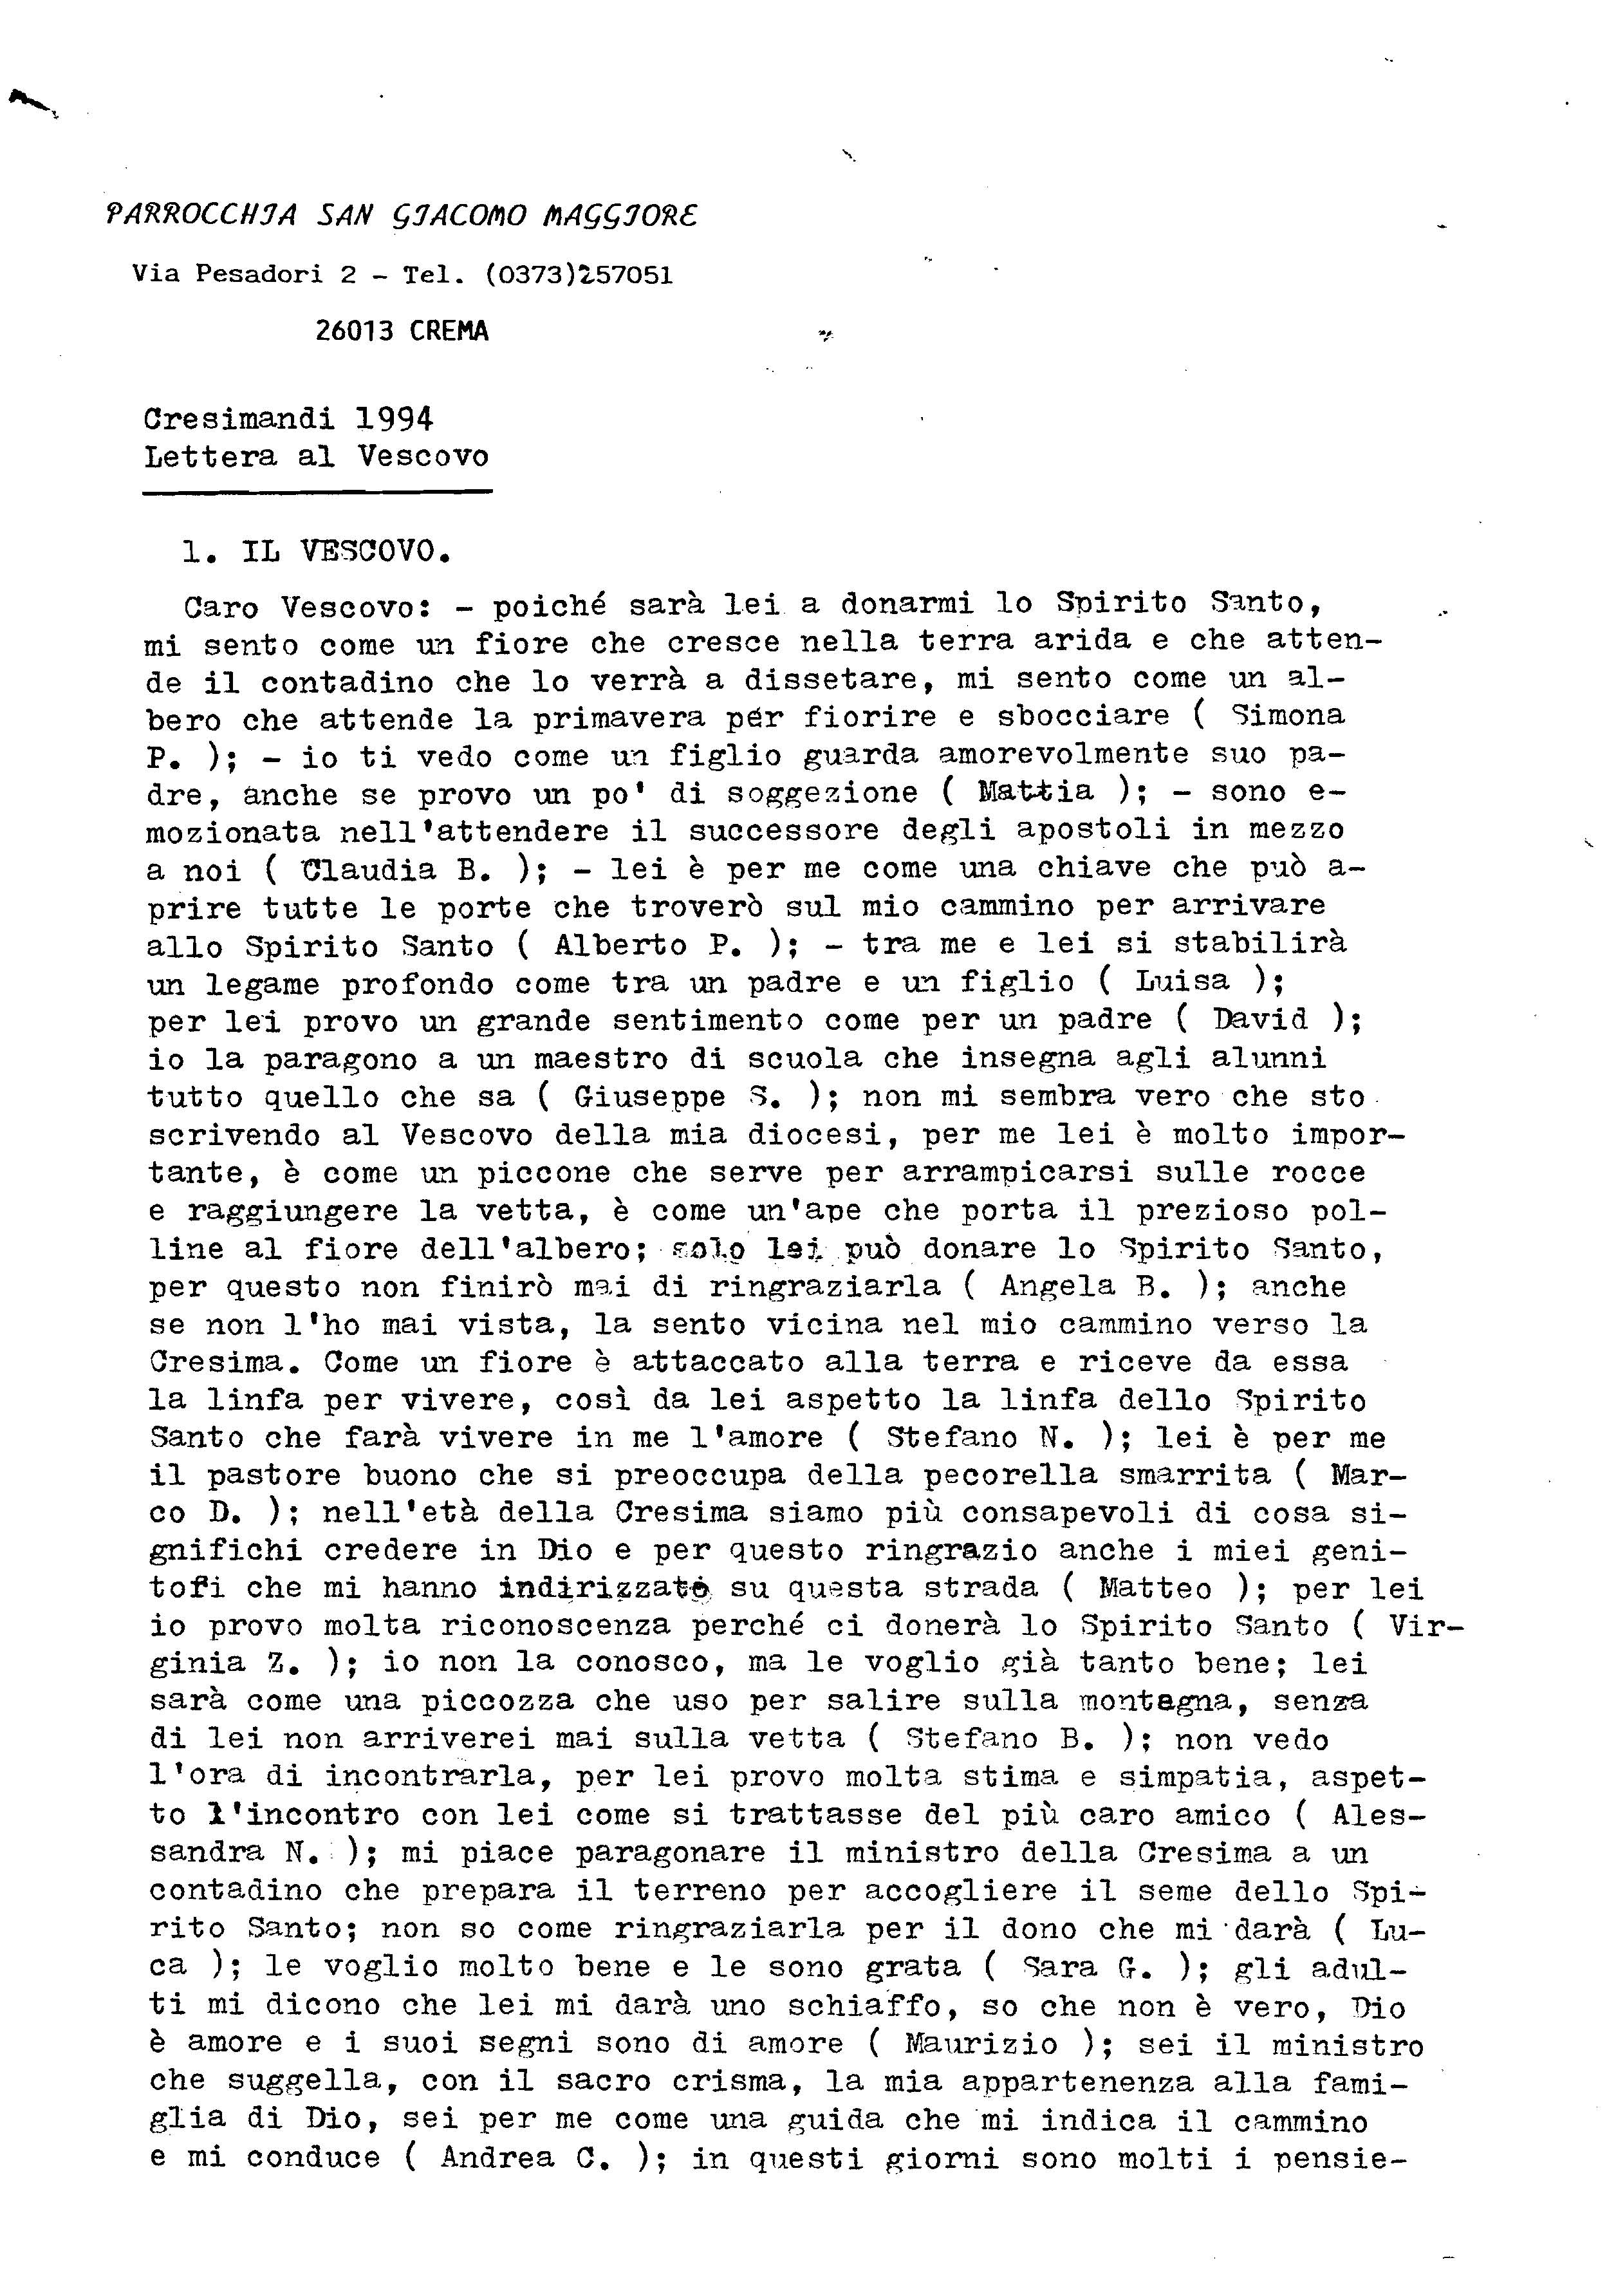 Lettere_Vescovo_Cresimandi_1994.pdf